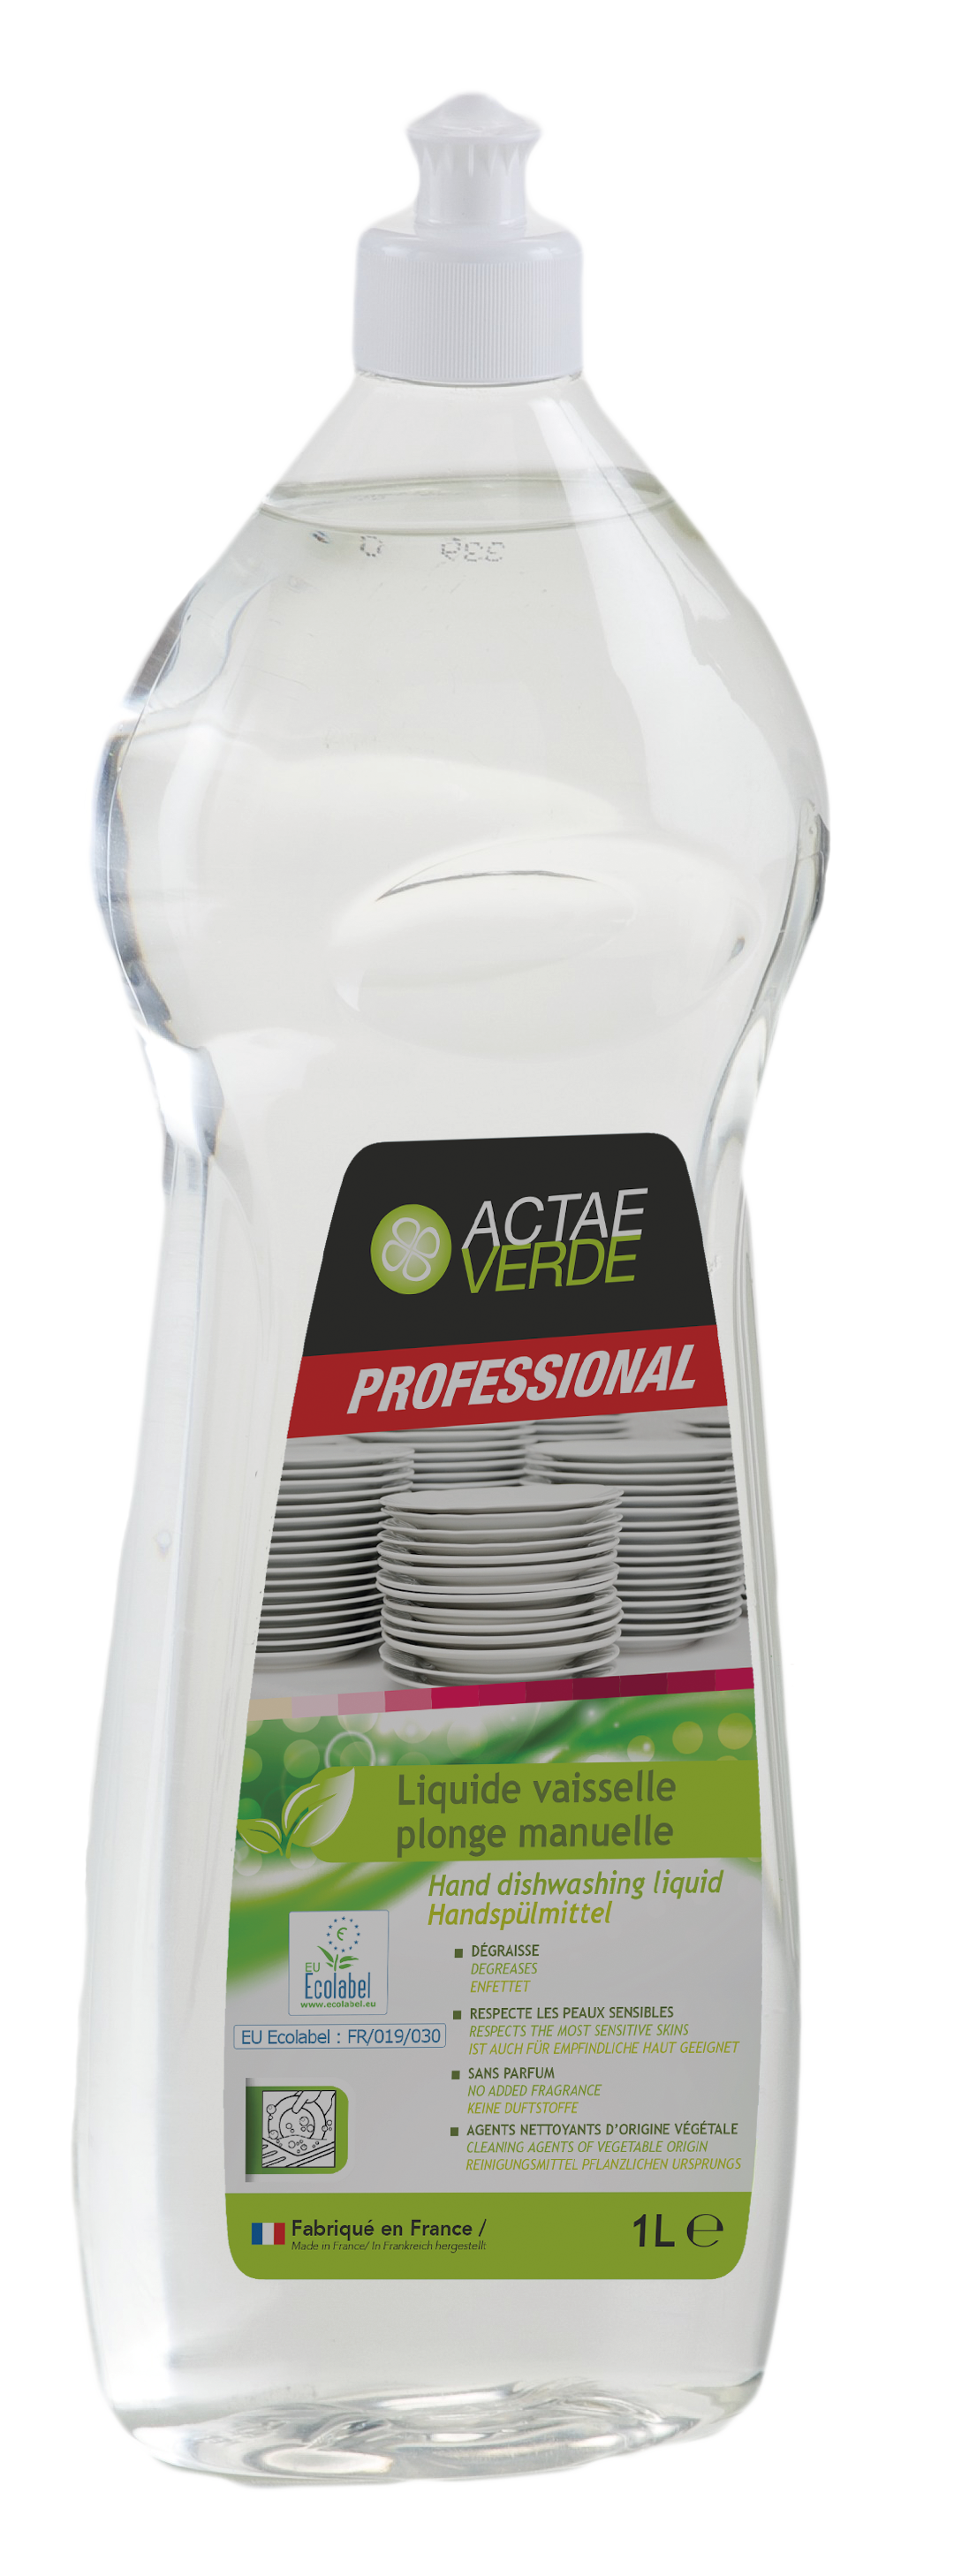 Actae Verde - Handspülmittel Flasche a 1Liter, aus pflanzlichen Inhaltsstoffen, EU Ecolabel